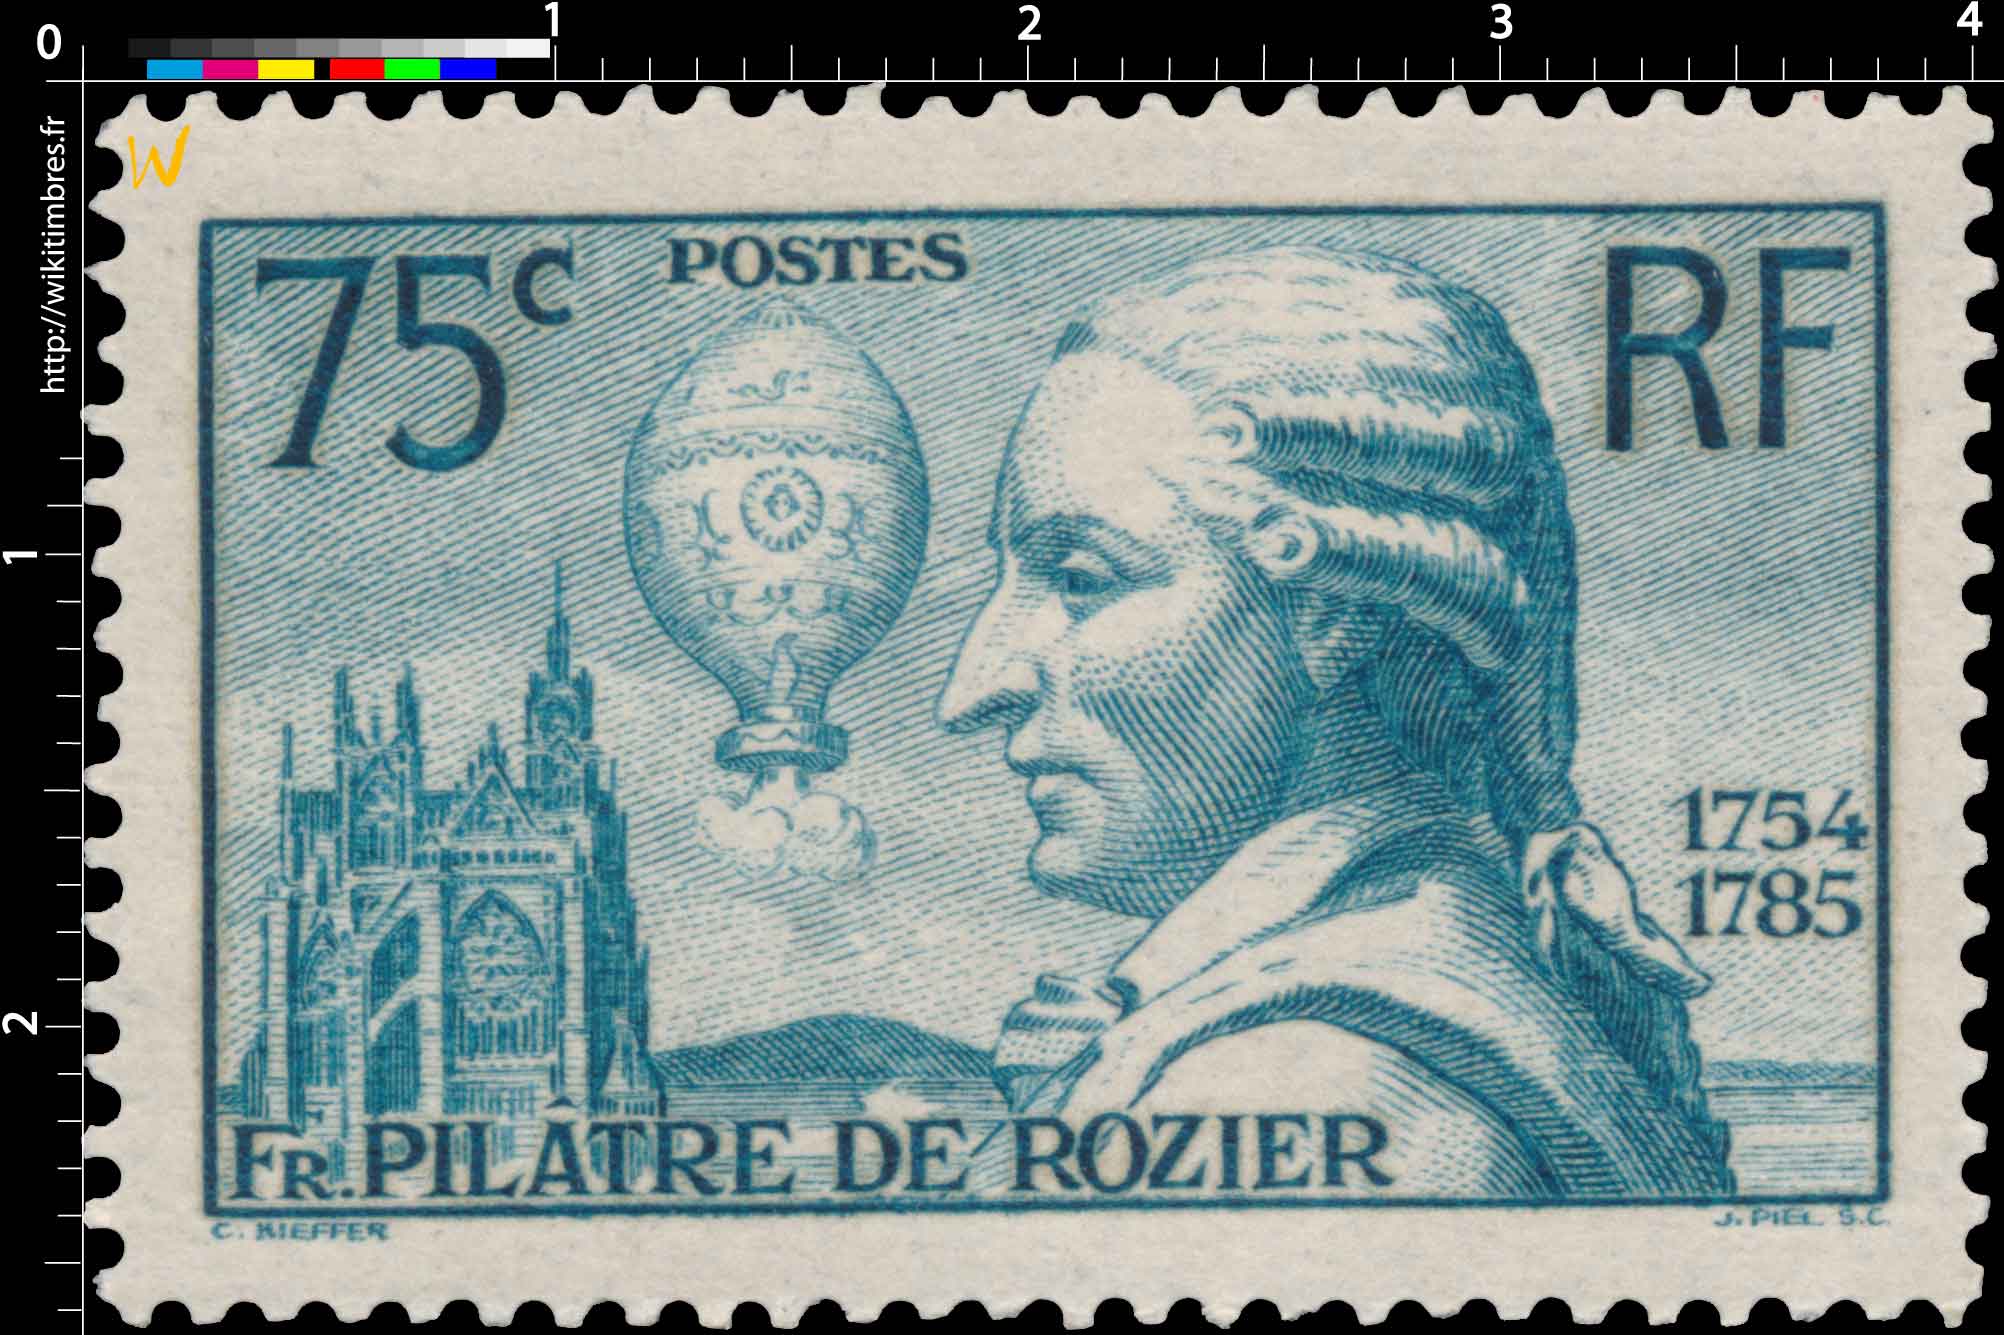 FR. PILÂTRE DE ROZIER 1754-1785